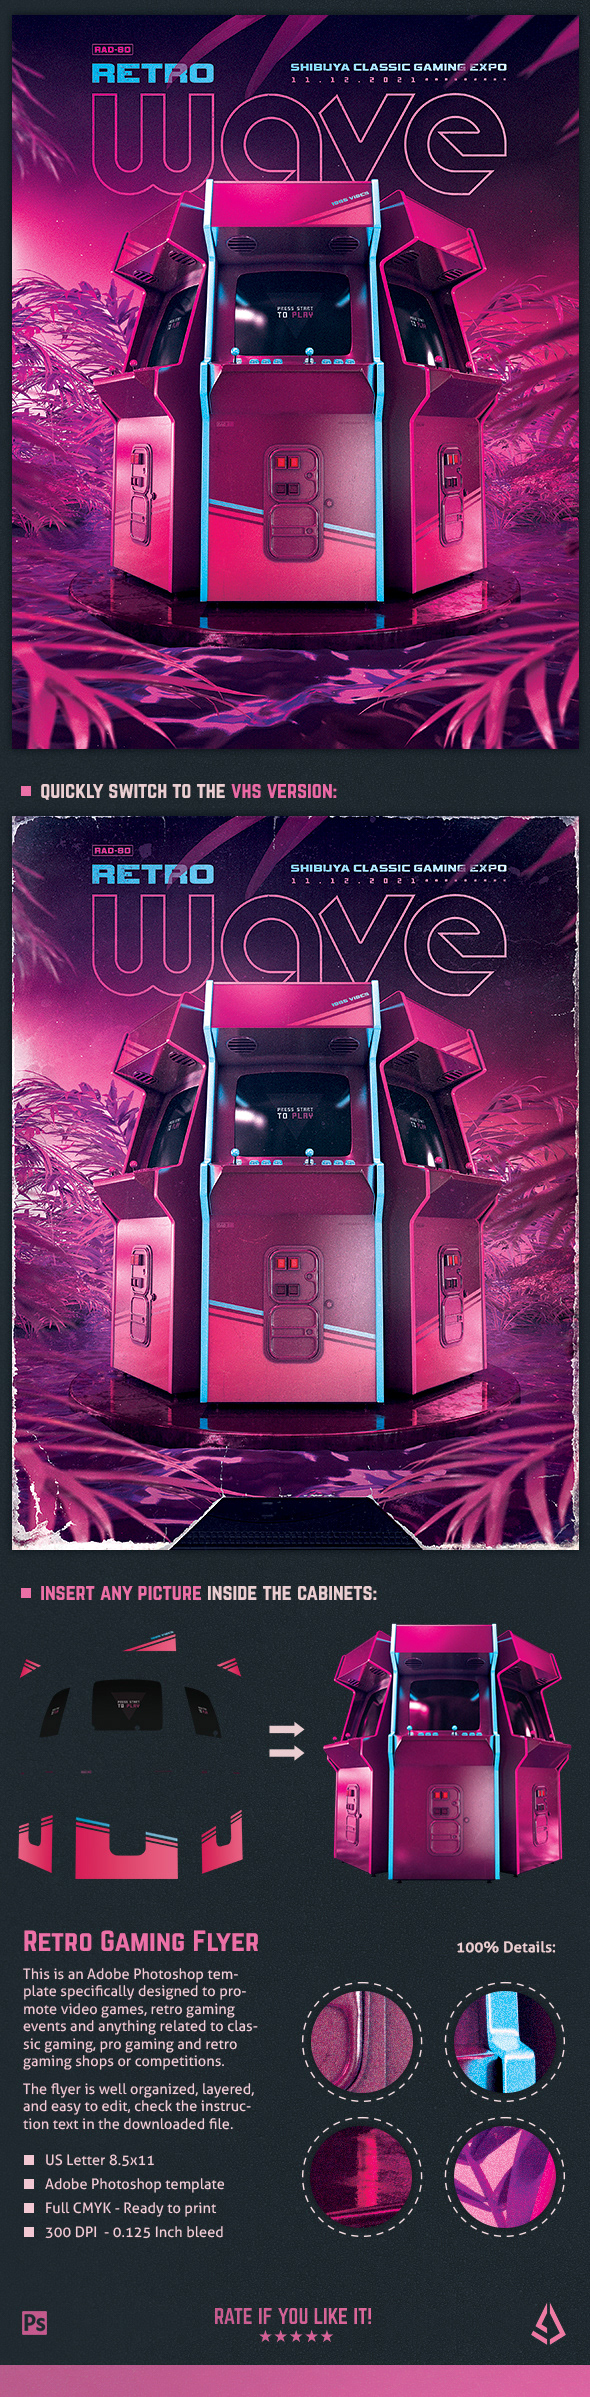 Retro Gaming Flyer 80s Synthwave Vapor Arcade Template